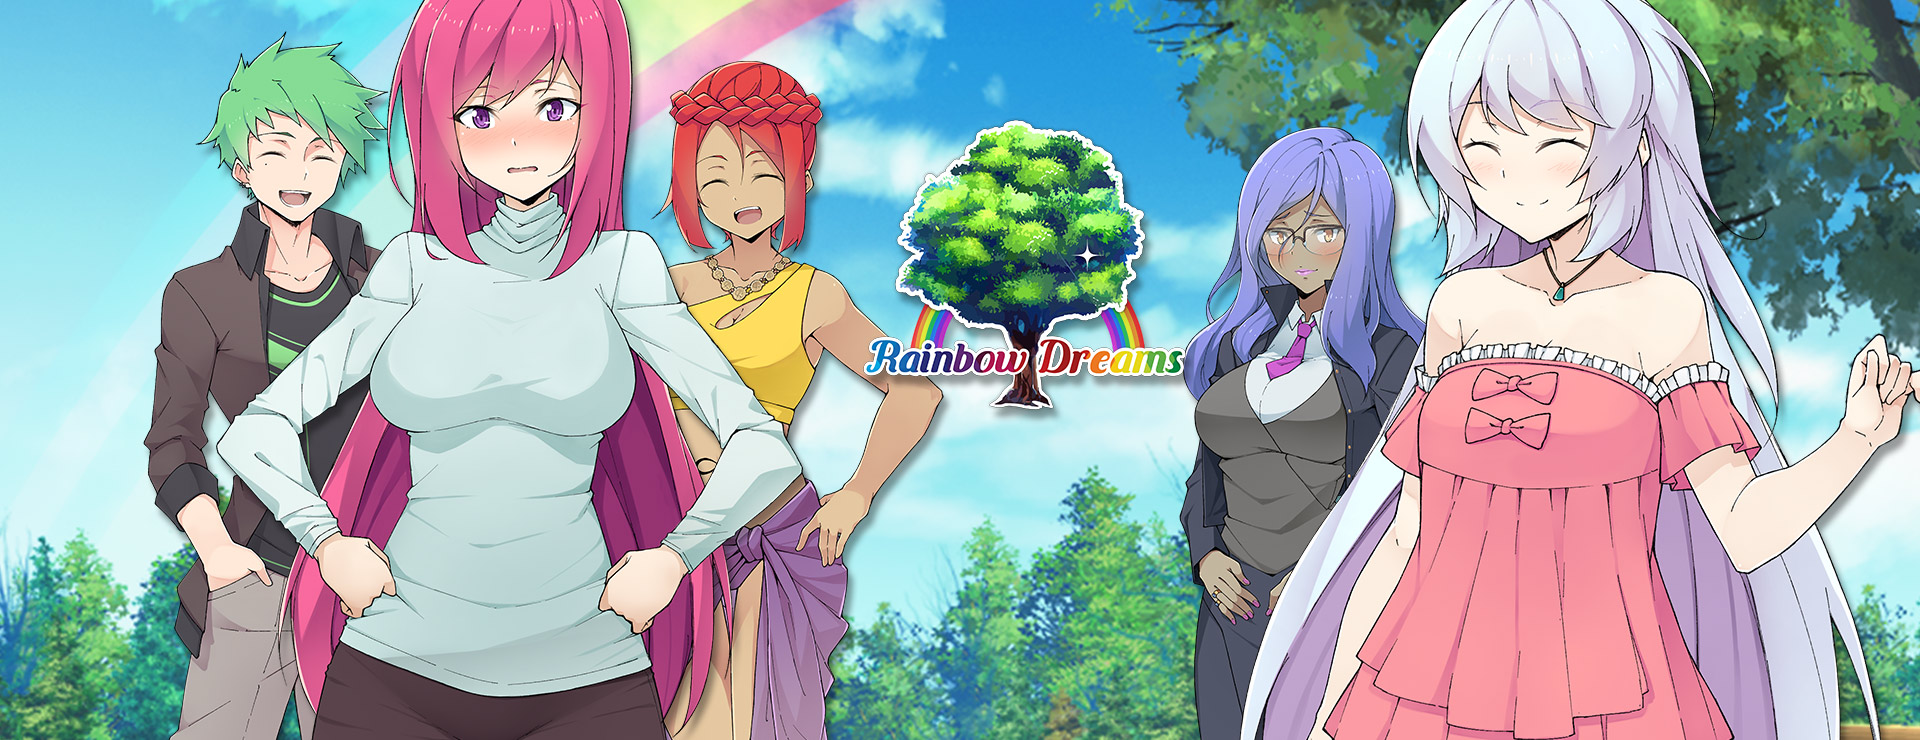 Rainbow Dreams - ビジュアルノベル ゲーム